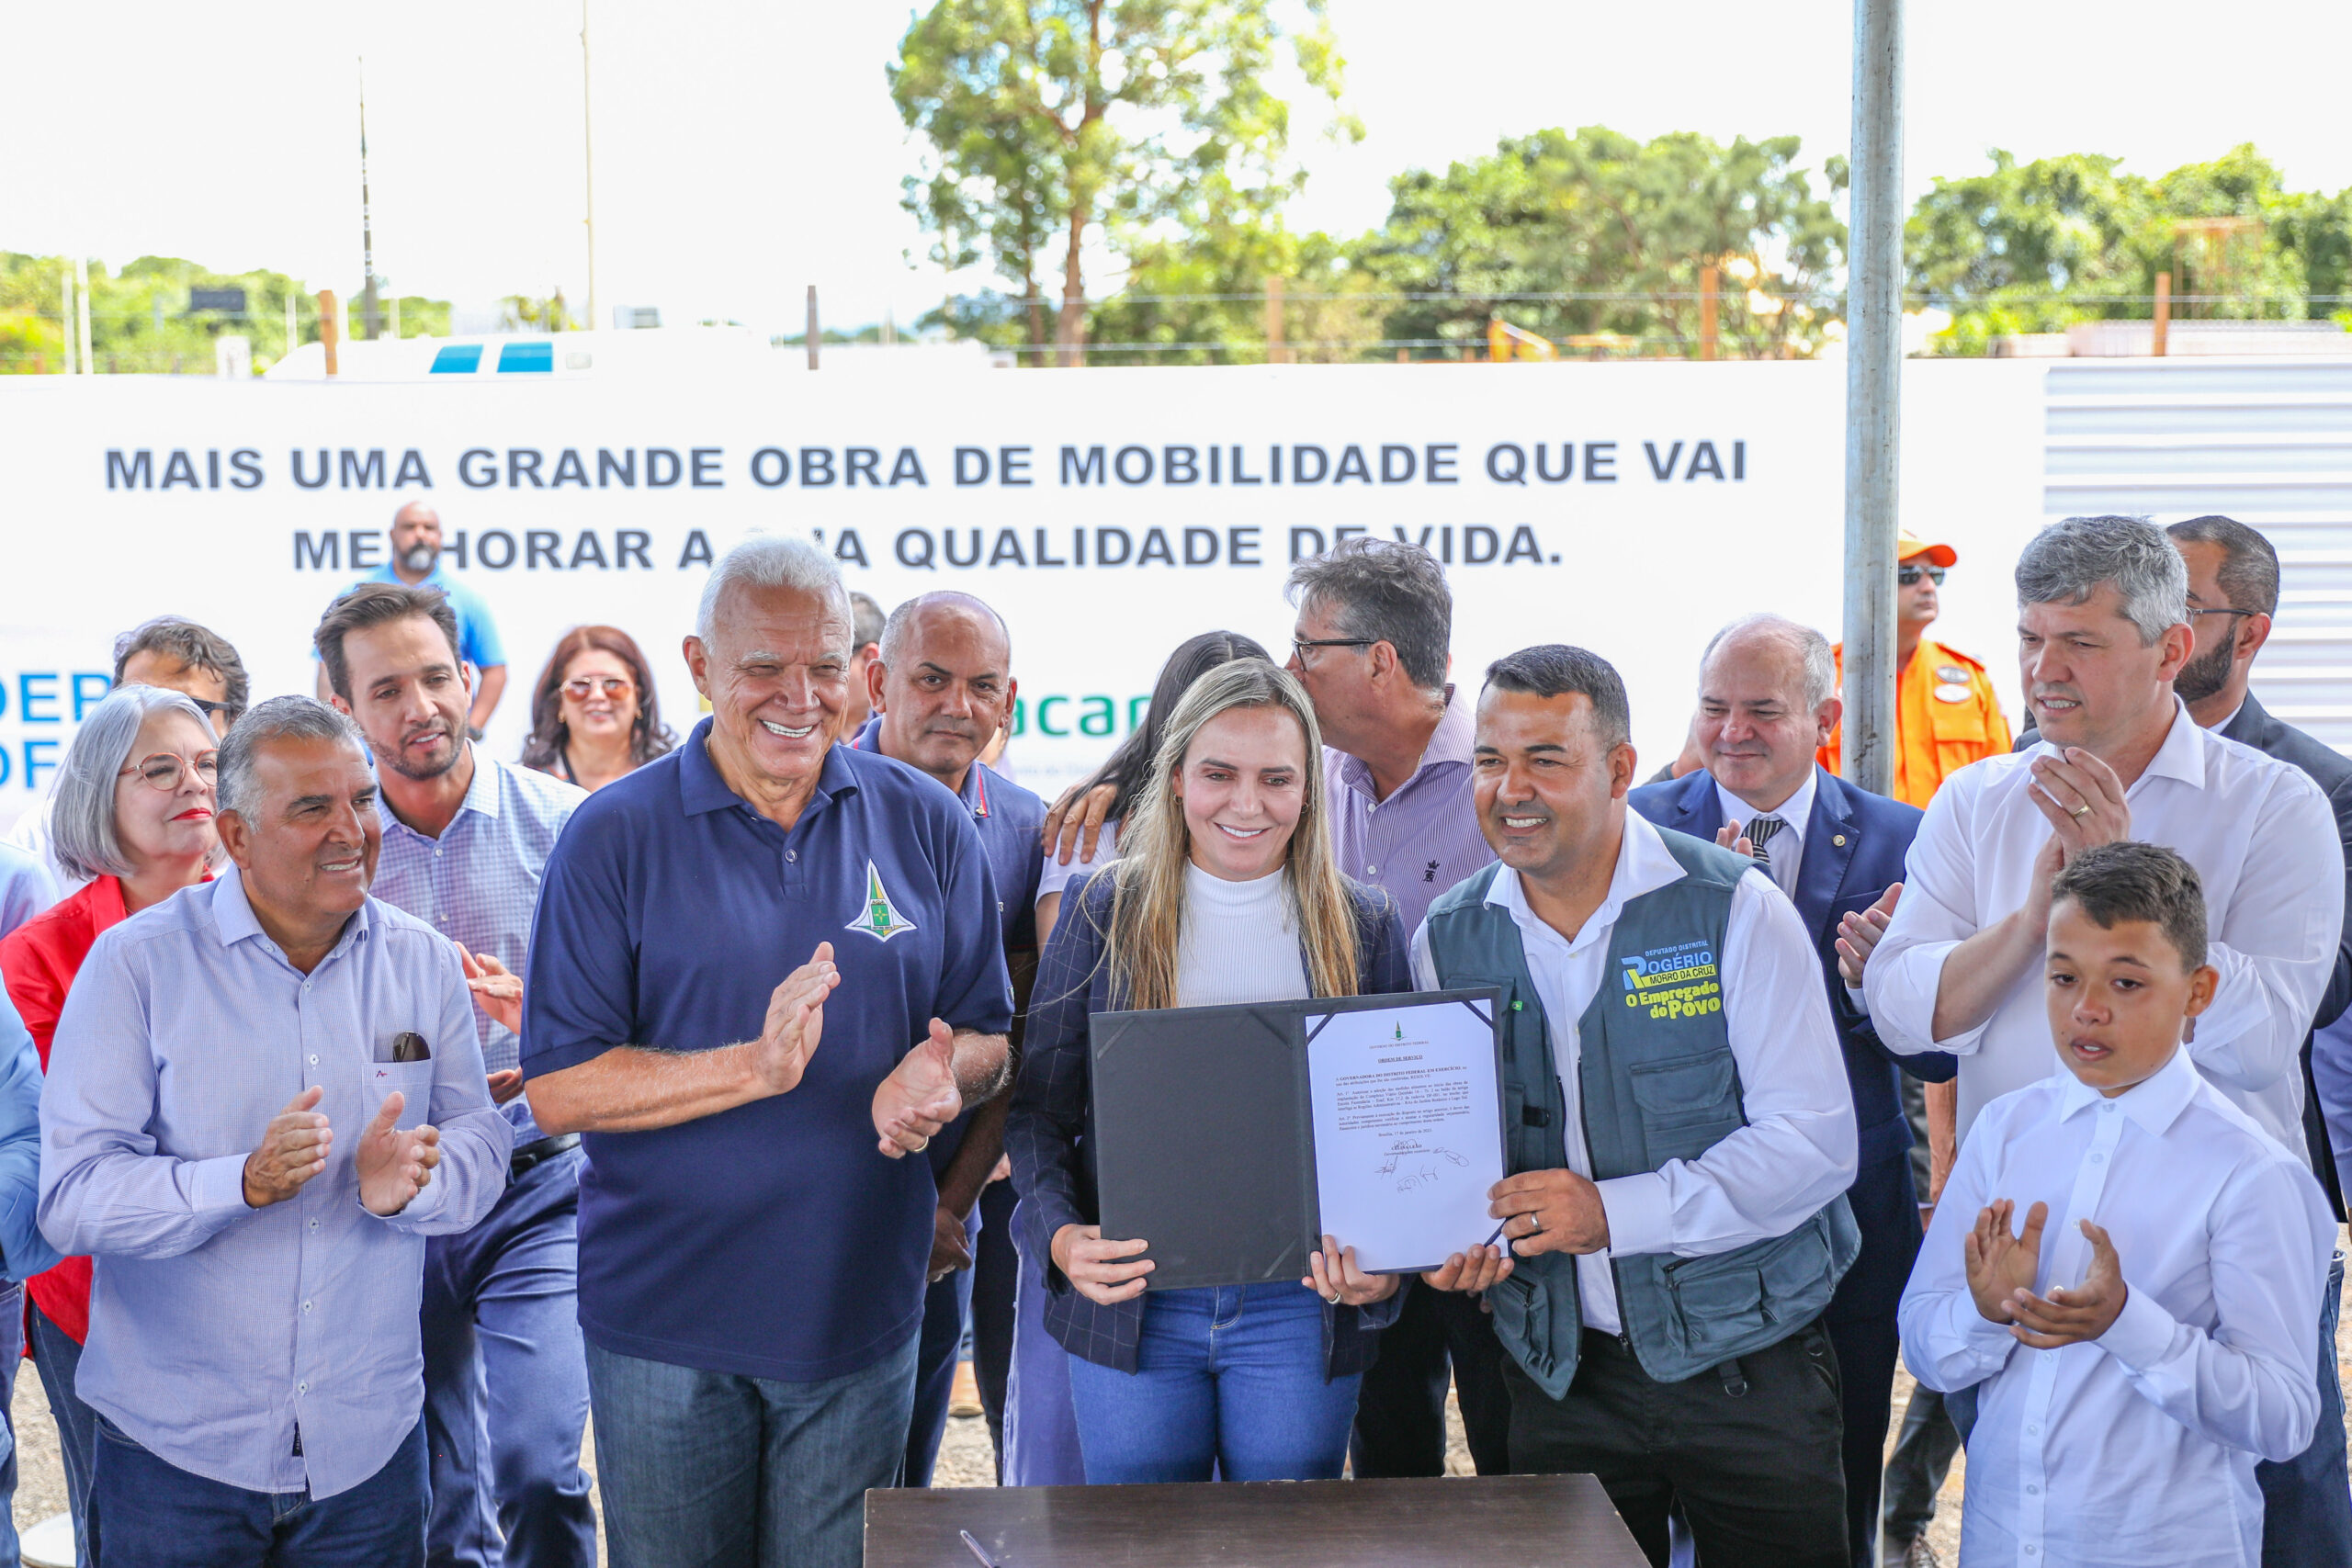 Saúde investe R$ 10 milhões em revitalização e ampliação do Hospital  Regional de Brazlândia - Secretaria de Saúde do Distrito Federal